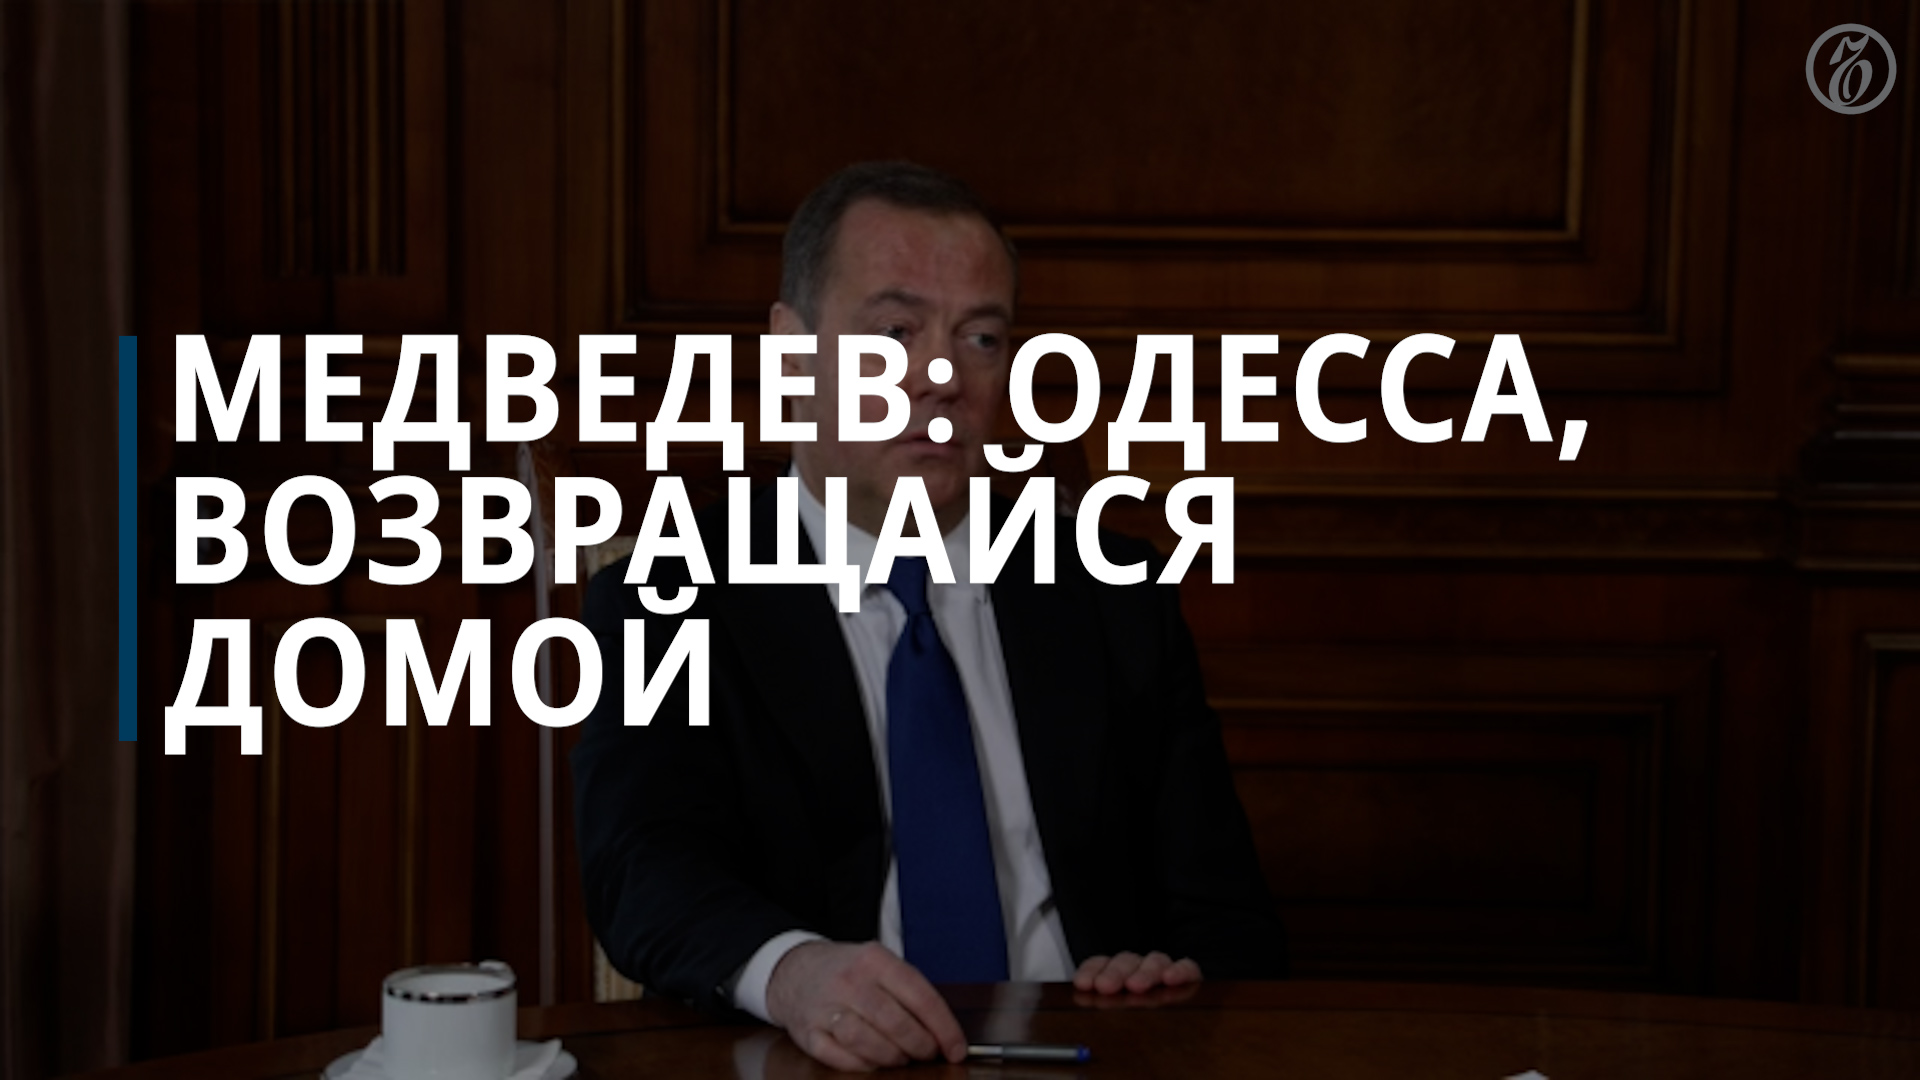 Медведев: мы заждались Одессу в Российской Федерации